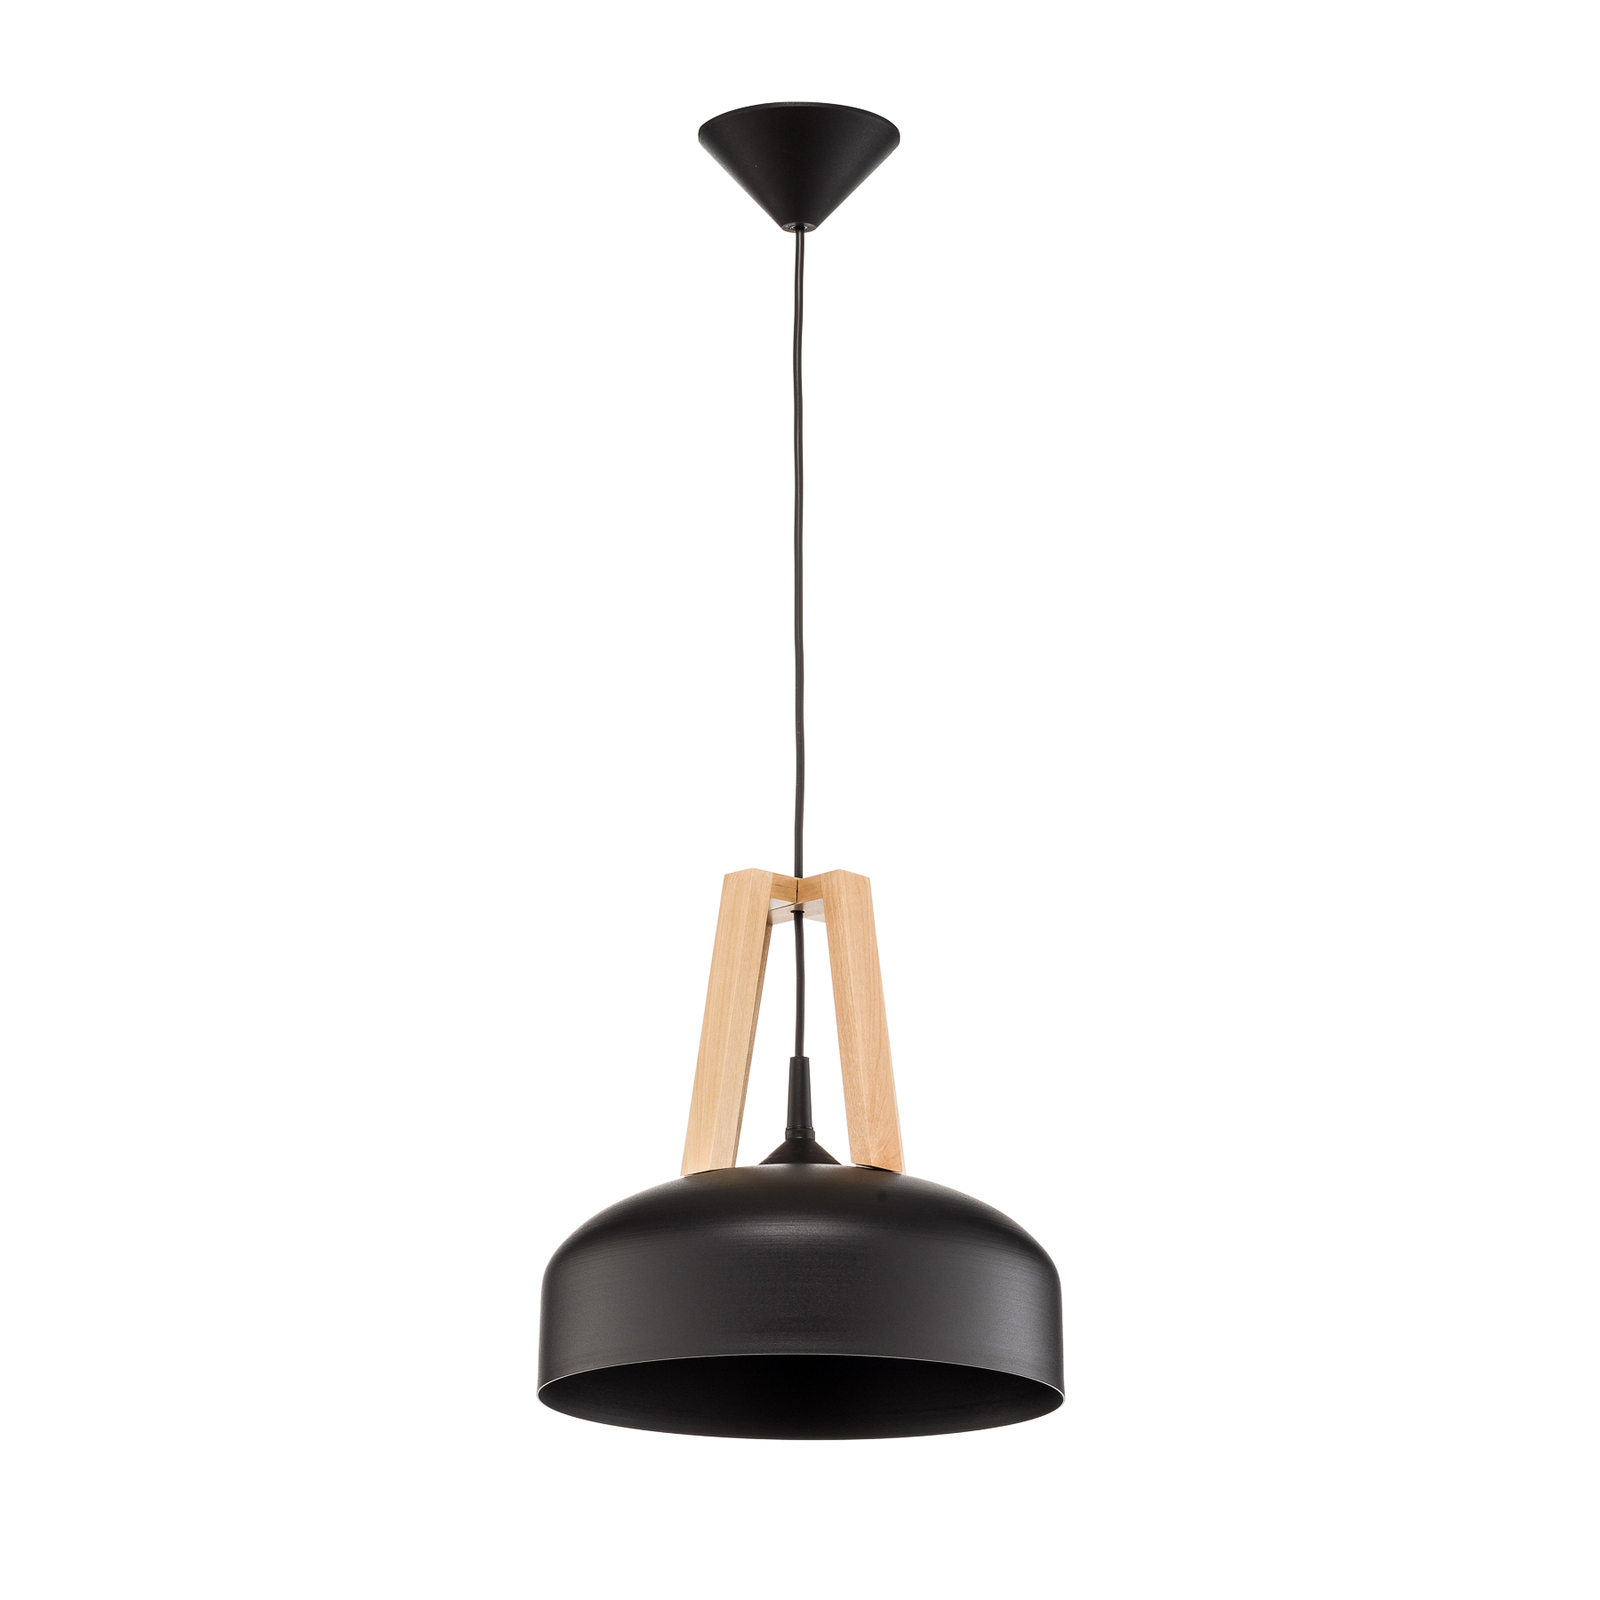 North hanging light, natural wood, black lampshade